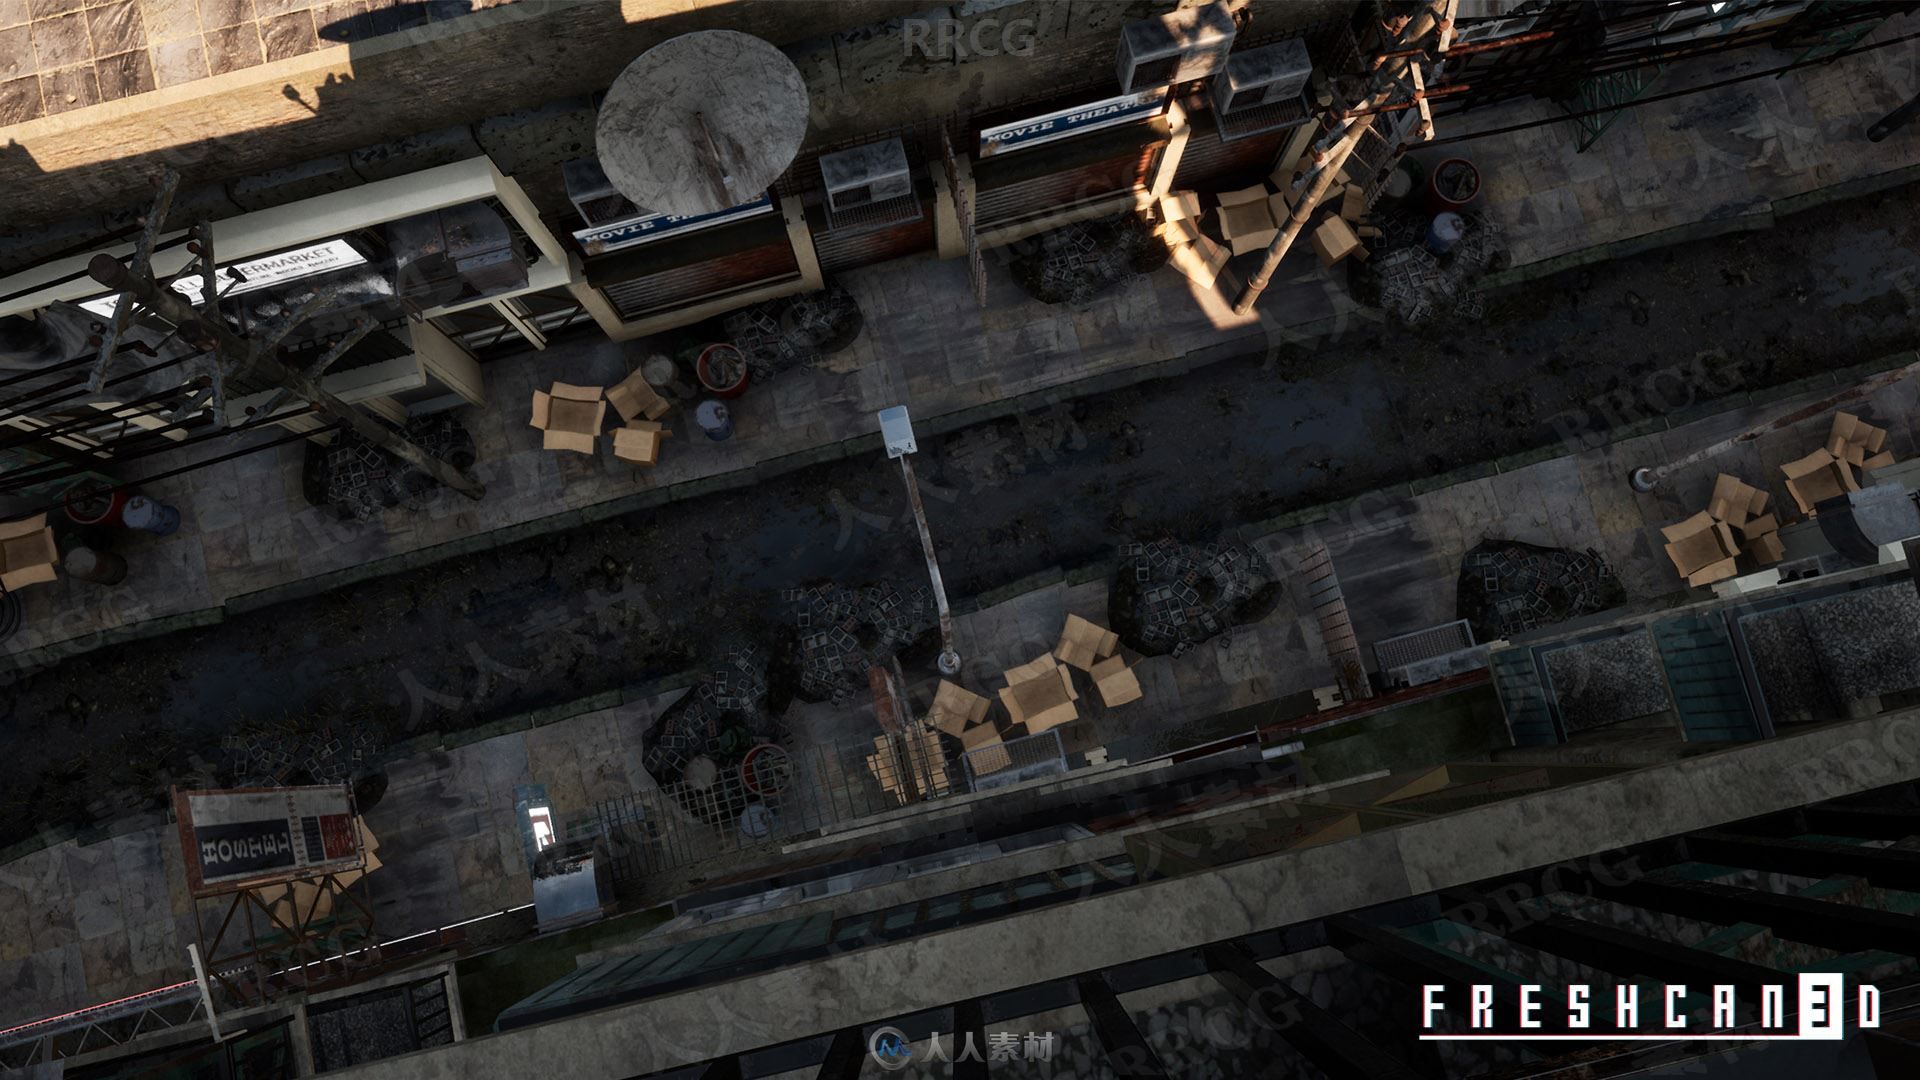 废弃世界末日城市建筑风格环境Unreal Engine游戏素材资源